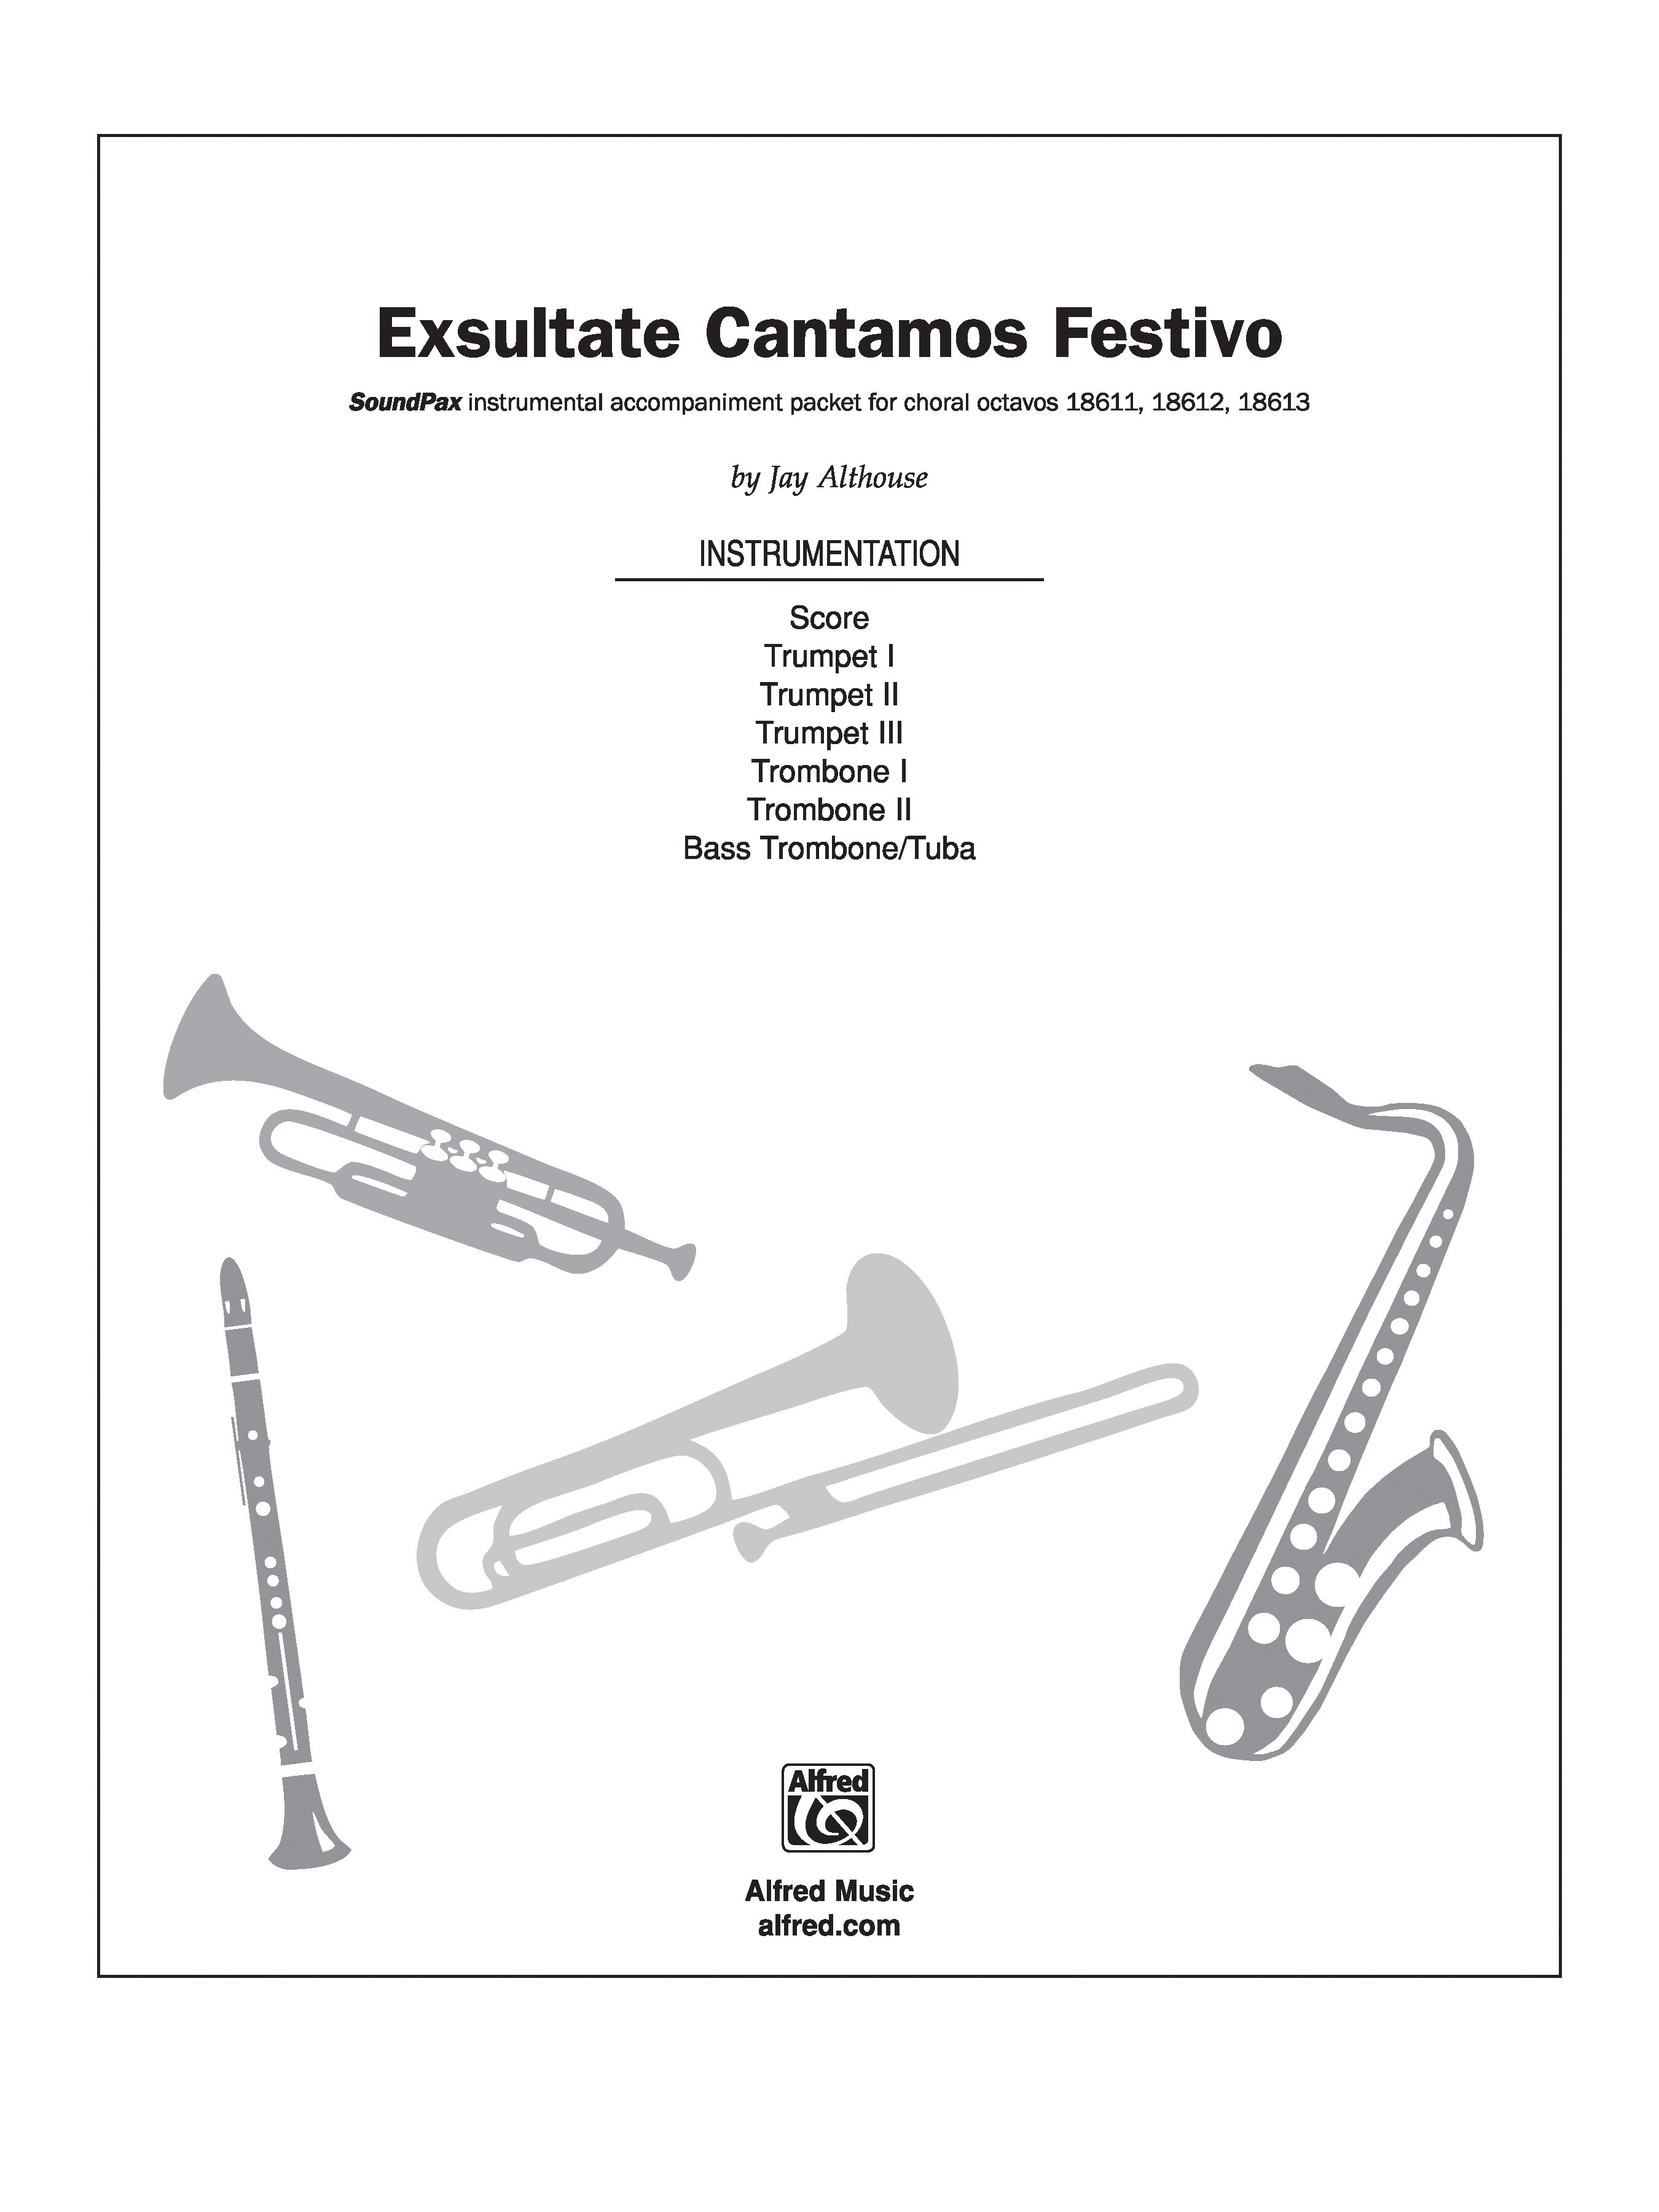 Exsultate Cantamos Fest/Sndpx